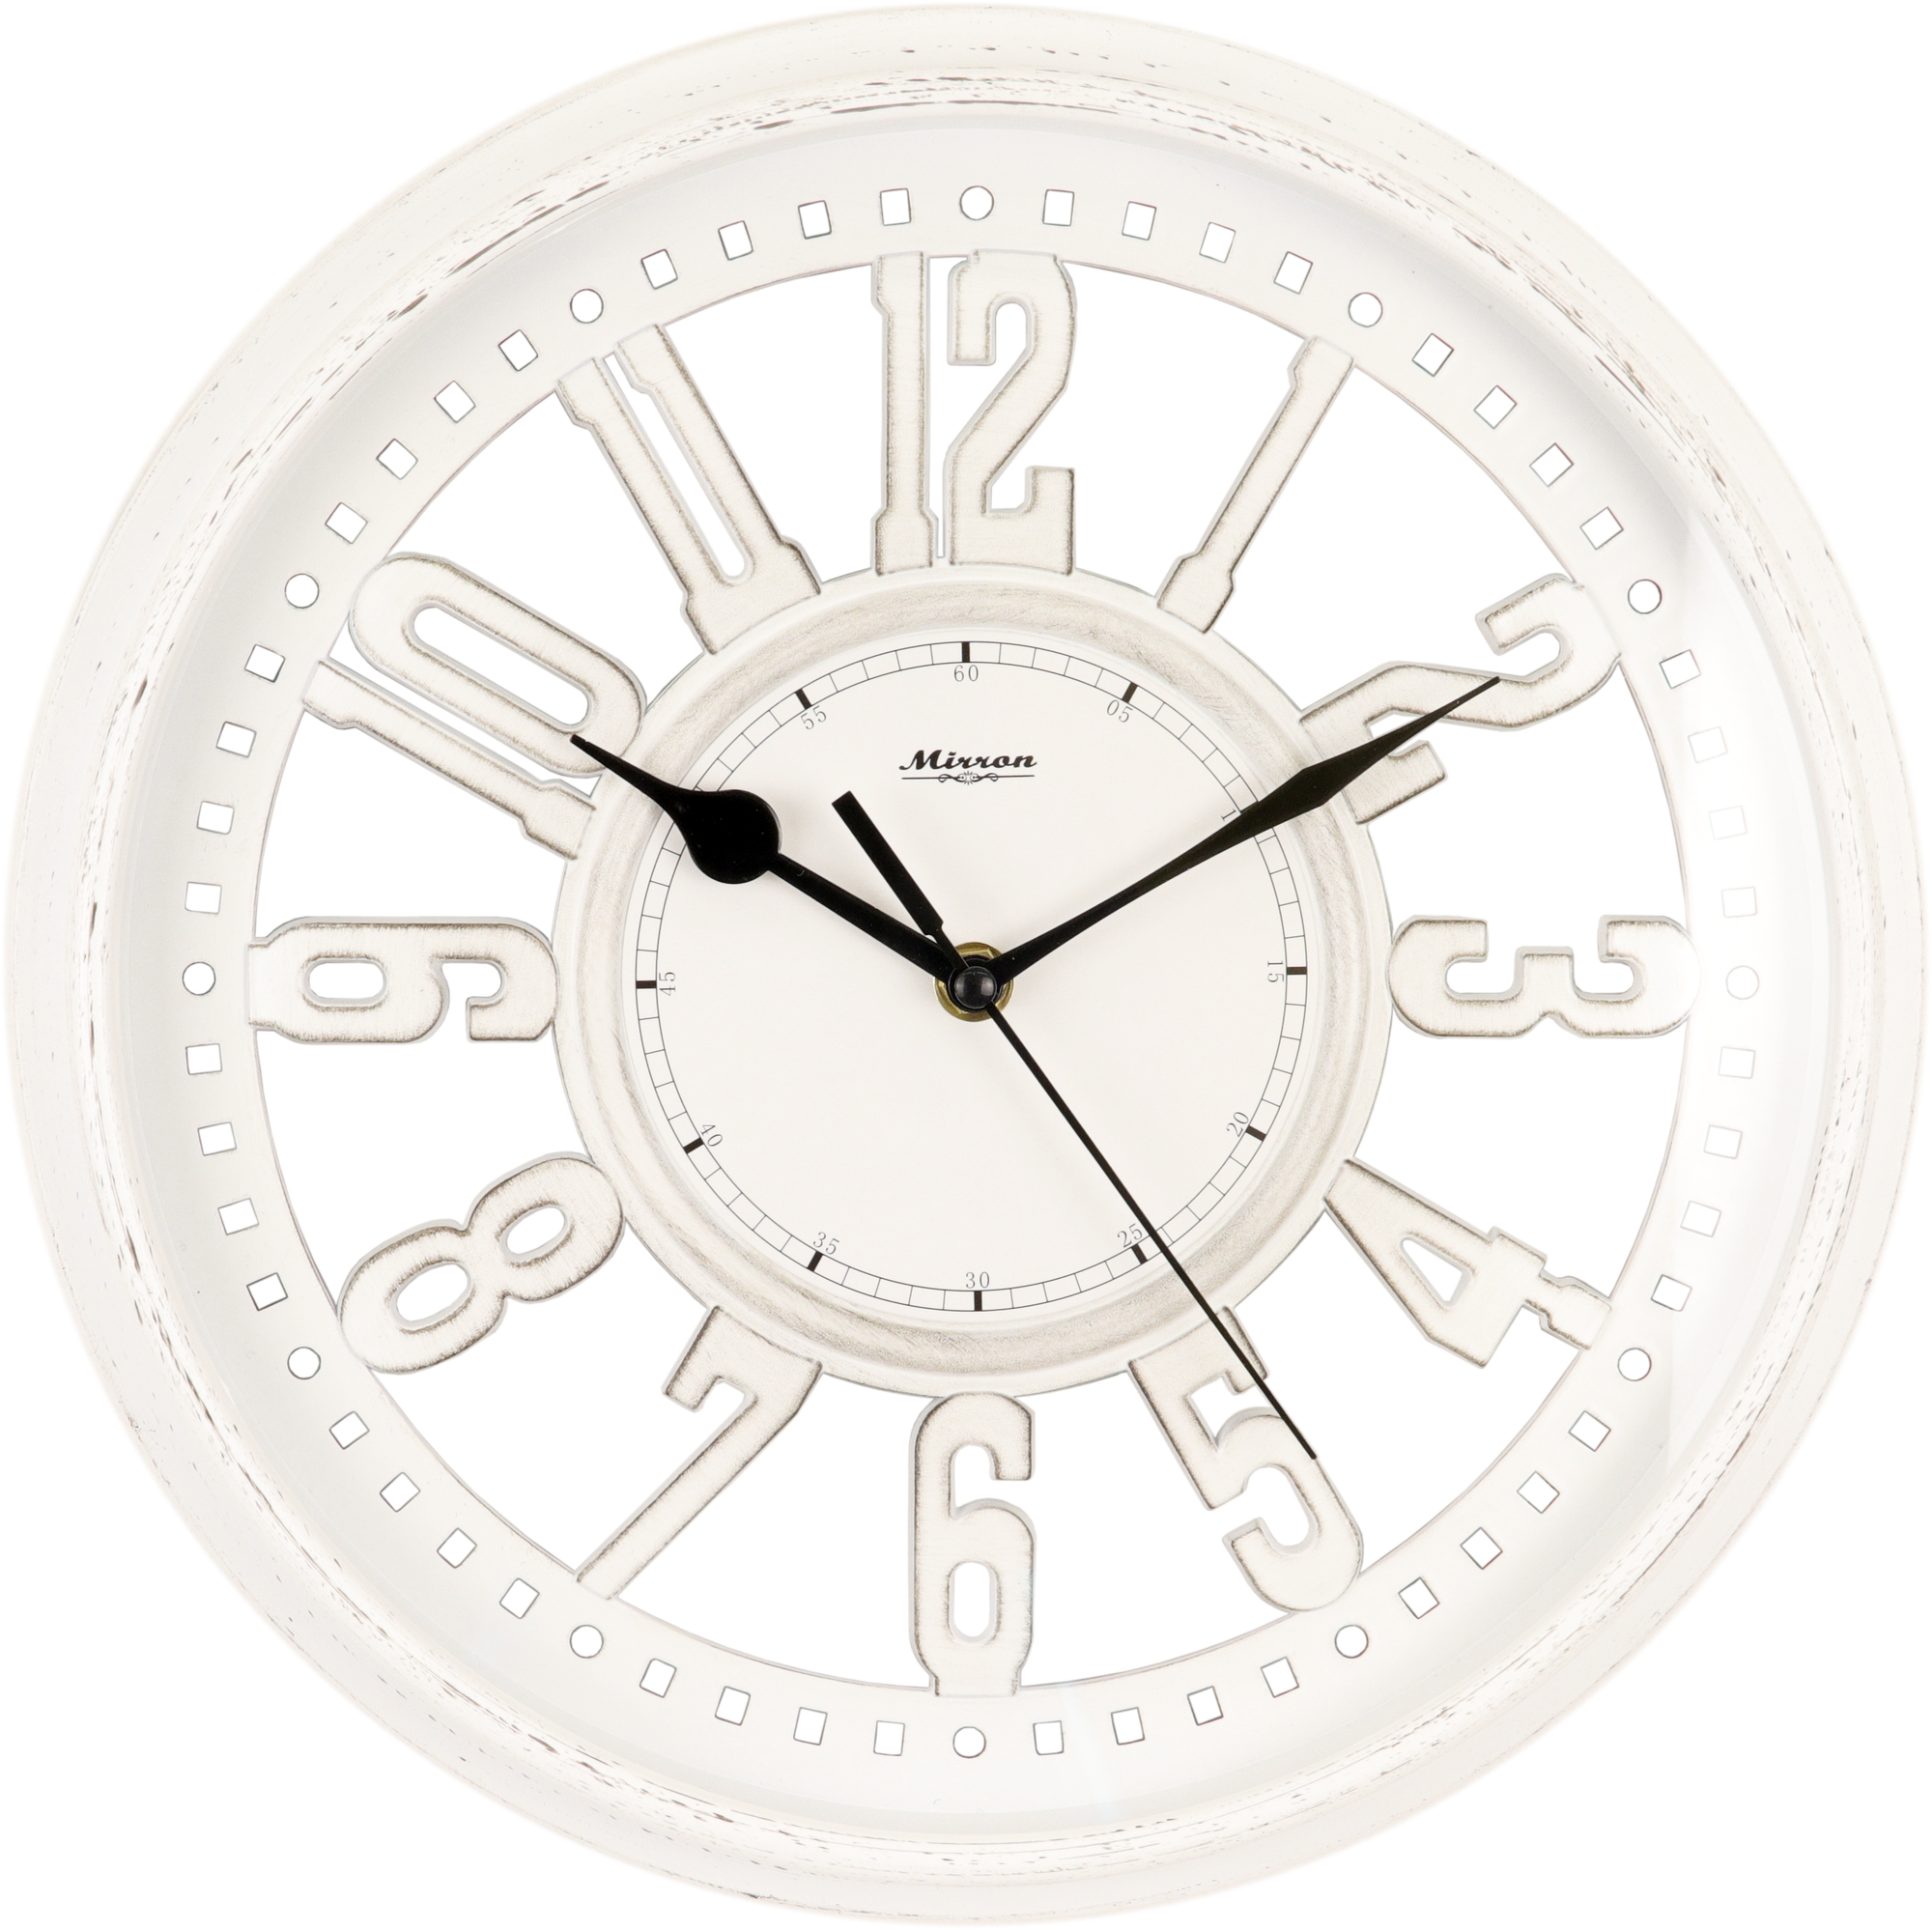 Большие круглые настенные часы MIRRON C217 МБА/Часы с диаметром 33 см/Белые часы с арабскими цифрами/Часы с минималистичным дизайном/Оригинальные часы в подарок/Часы в спальню, комнату, кухню